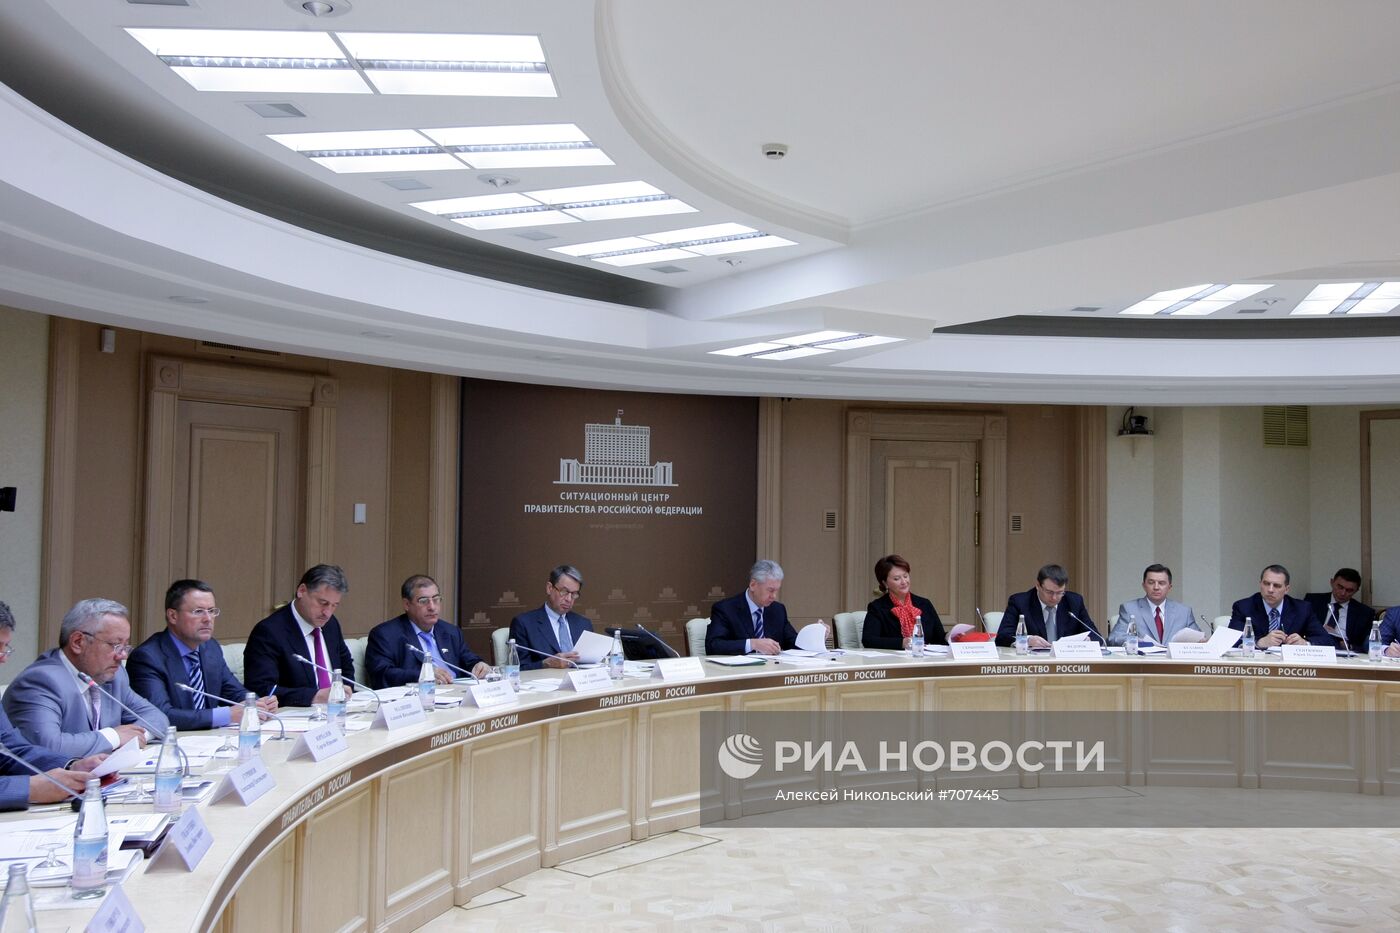 Сергей Собянин провел заседание в Доме правительства РФ